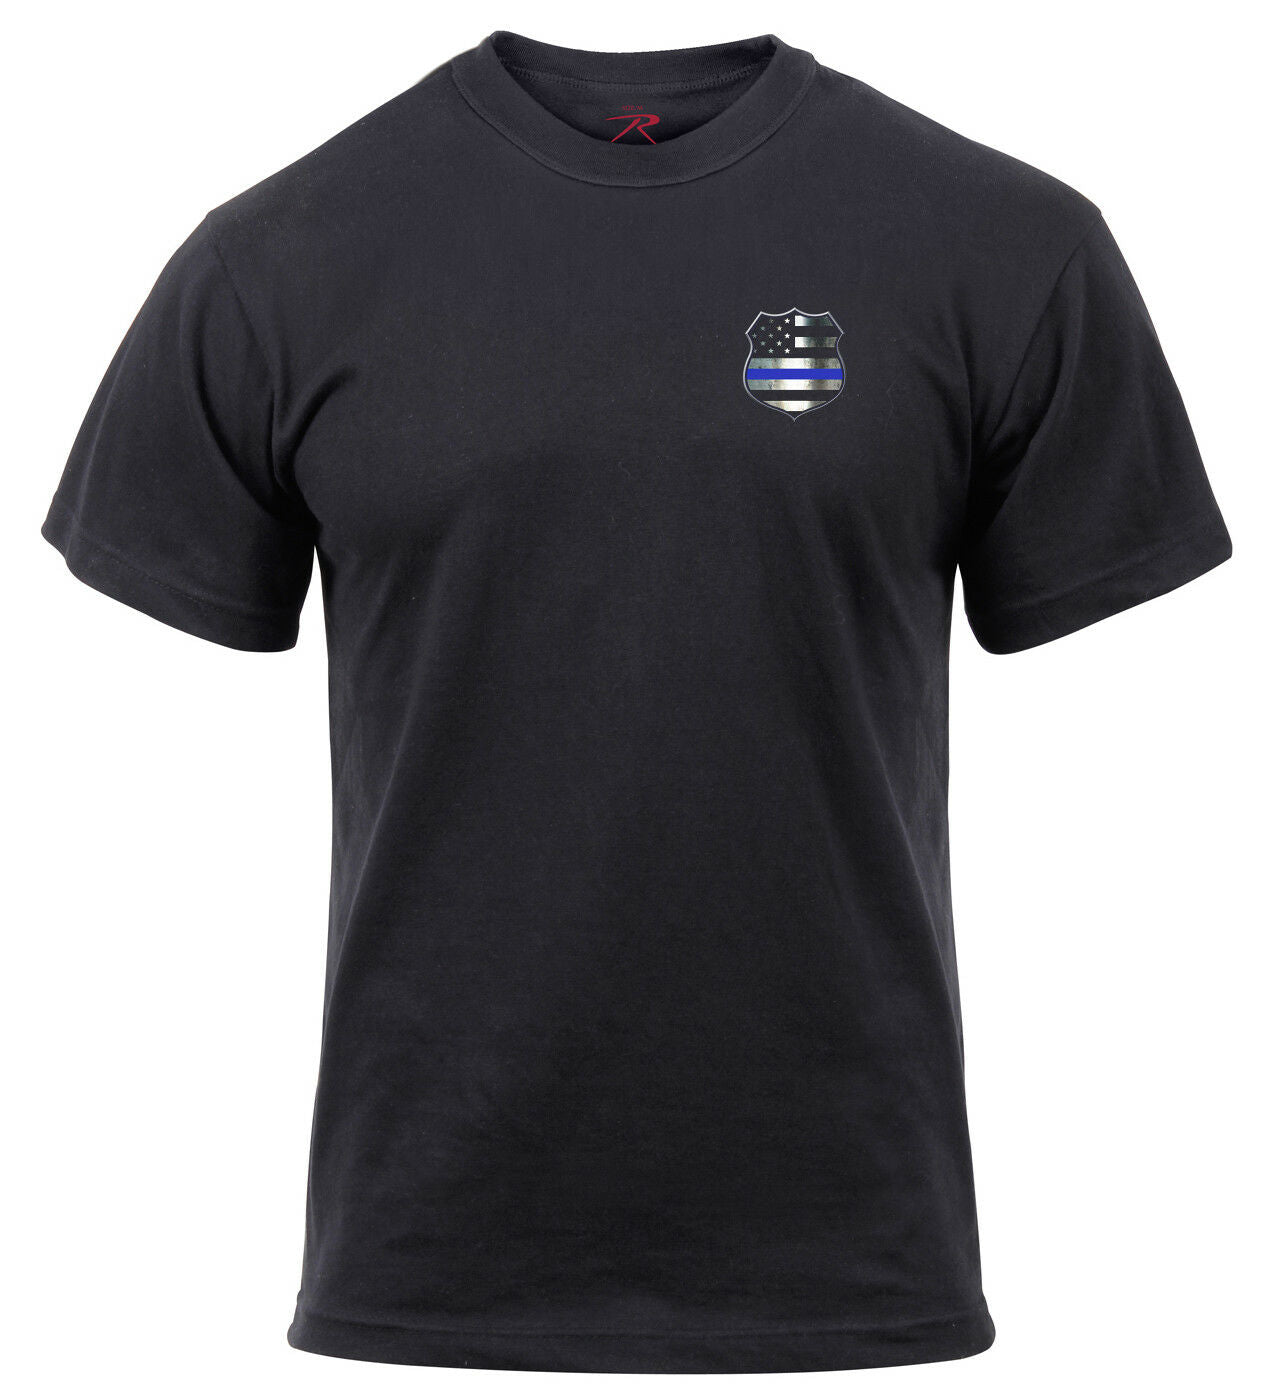 Rothco Thin Blue Line Shield T-Shirt - Black